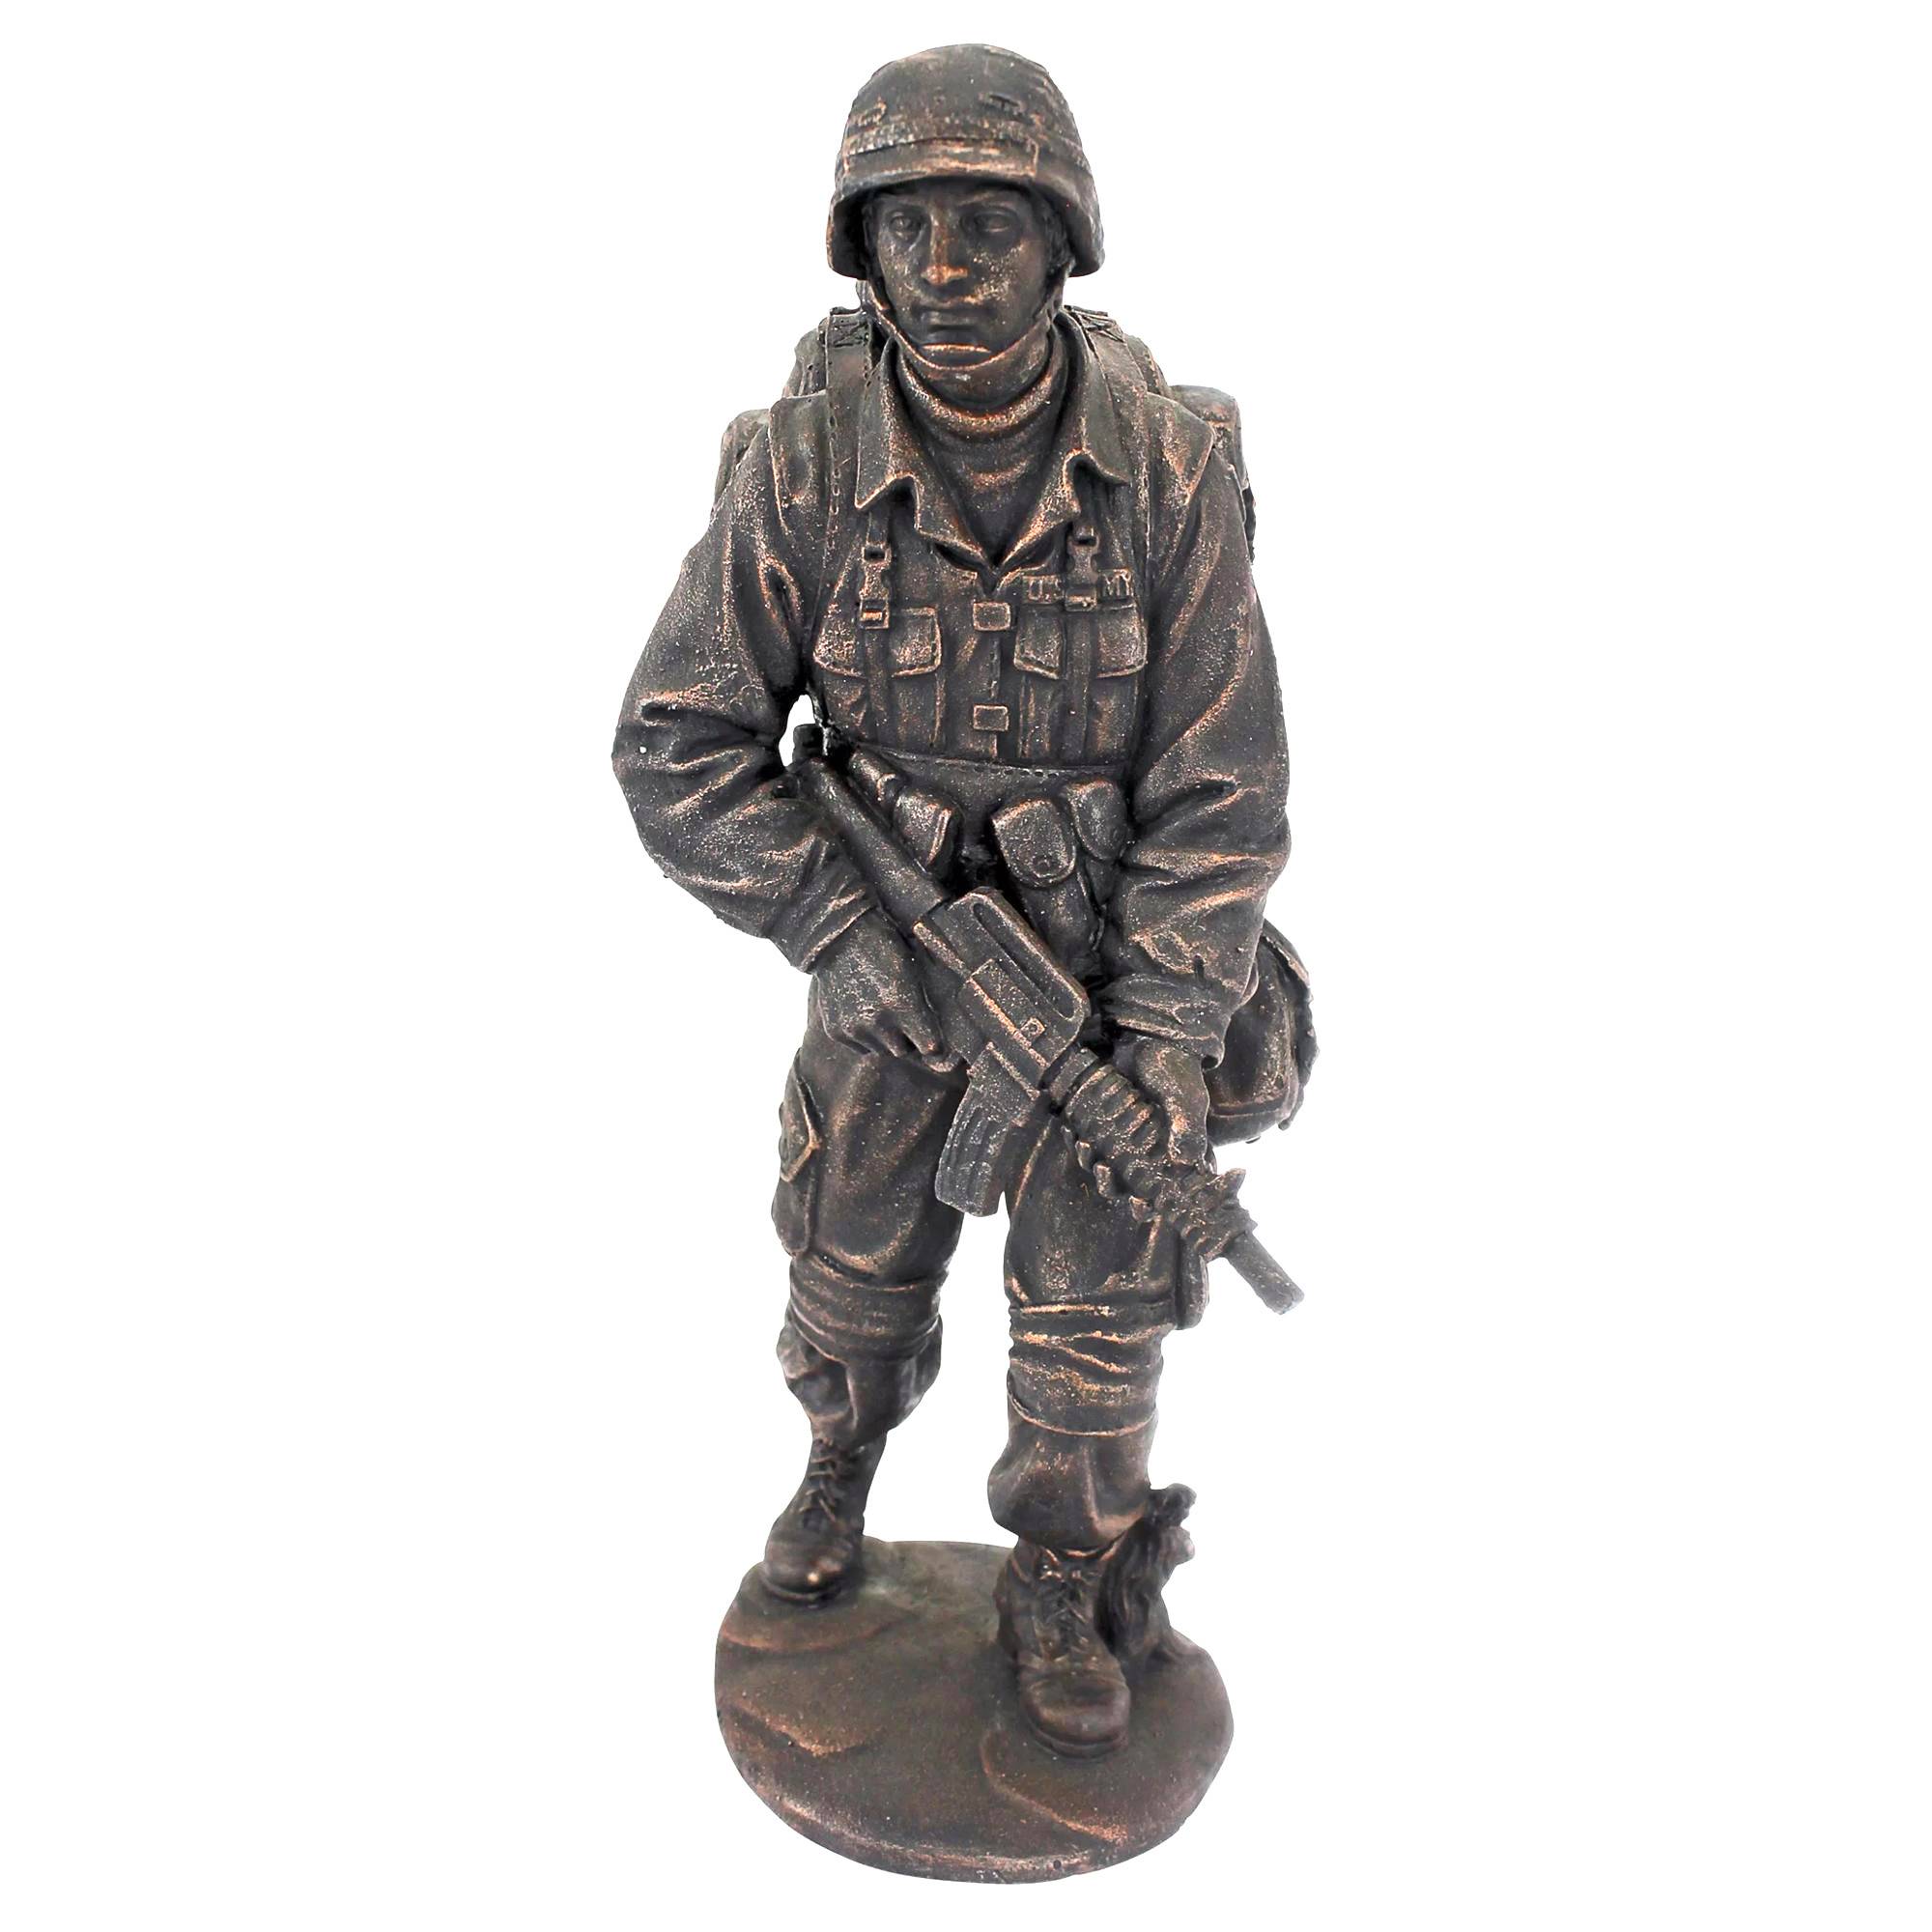 Parka dekoracio casting metala skulptaĵo bronza vivgranda soldato statuo